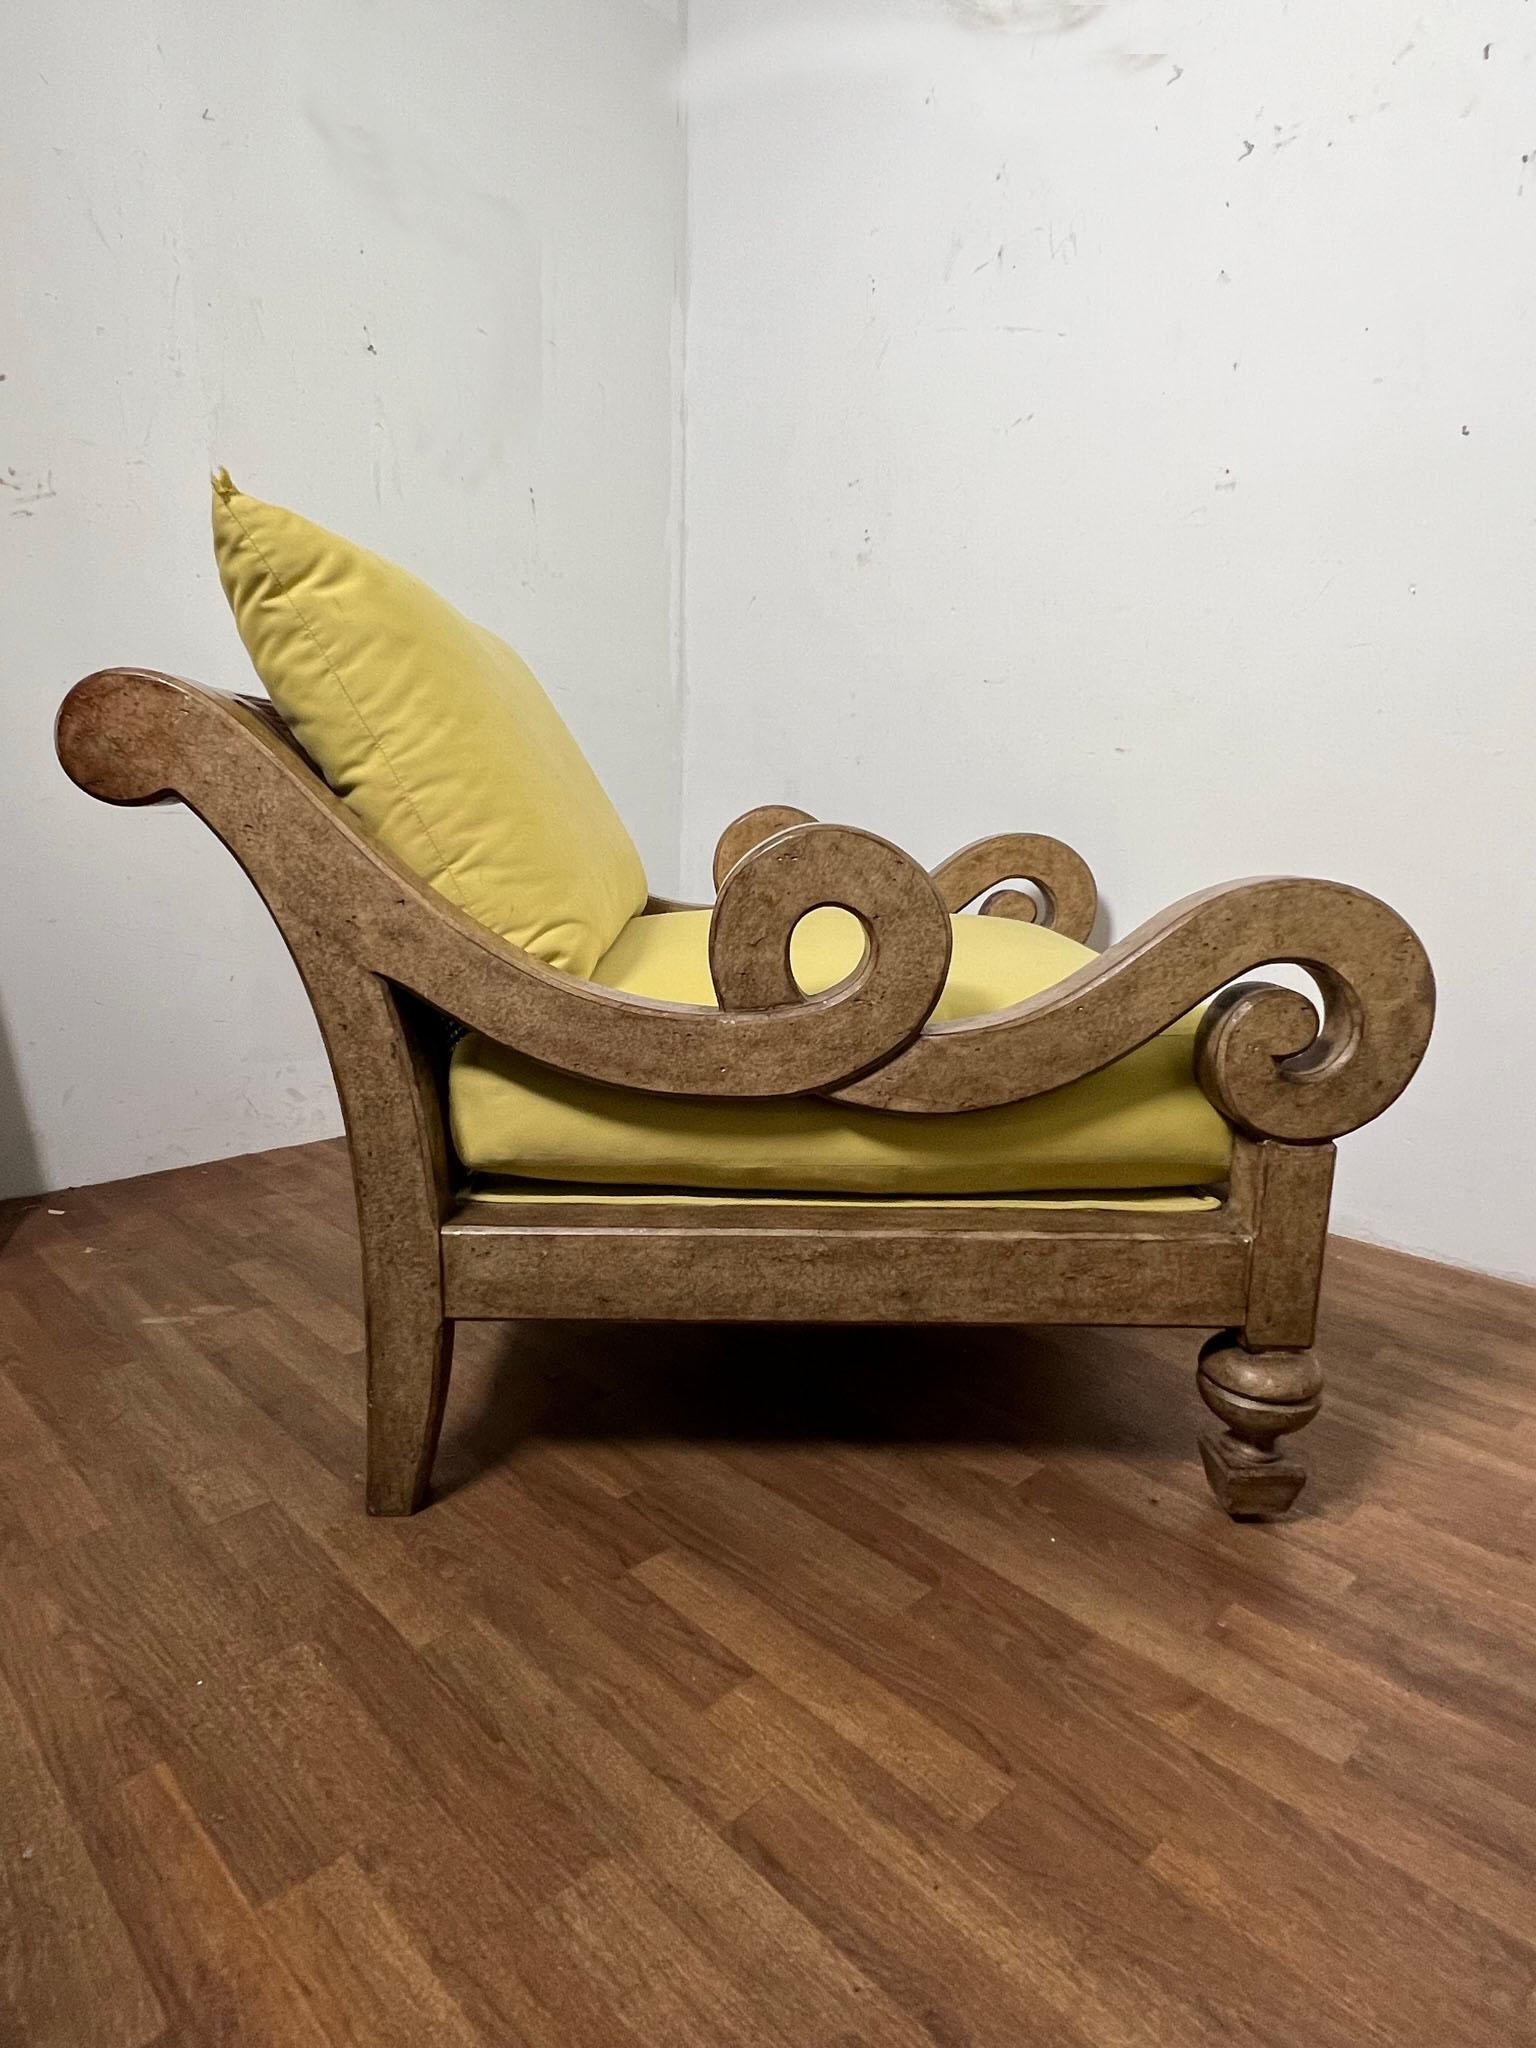 Chaise longue post-moderne extrêmement surdimensionnée en finition brunie avec accoudoirs en serpentin, y compris un ottoman assorti, par Marge Carson, vers les années 1980.

La chaise mesure 43,25